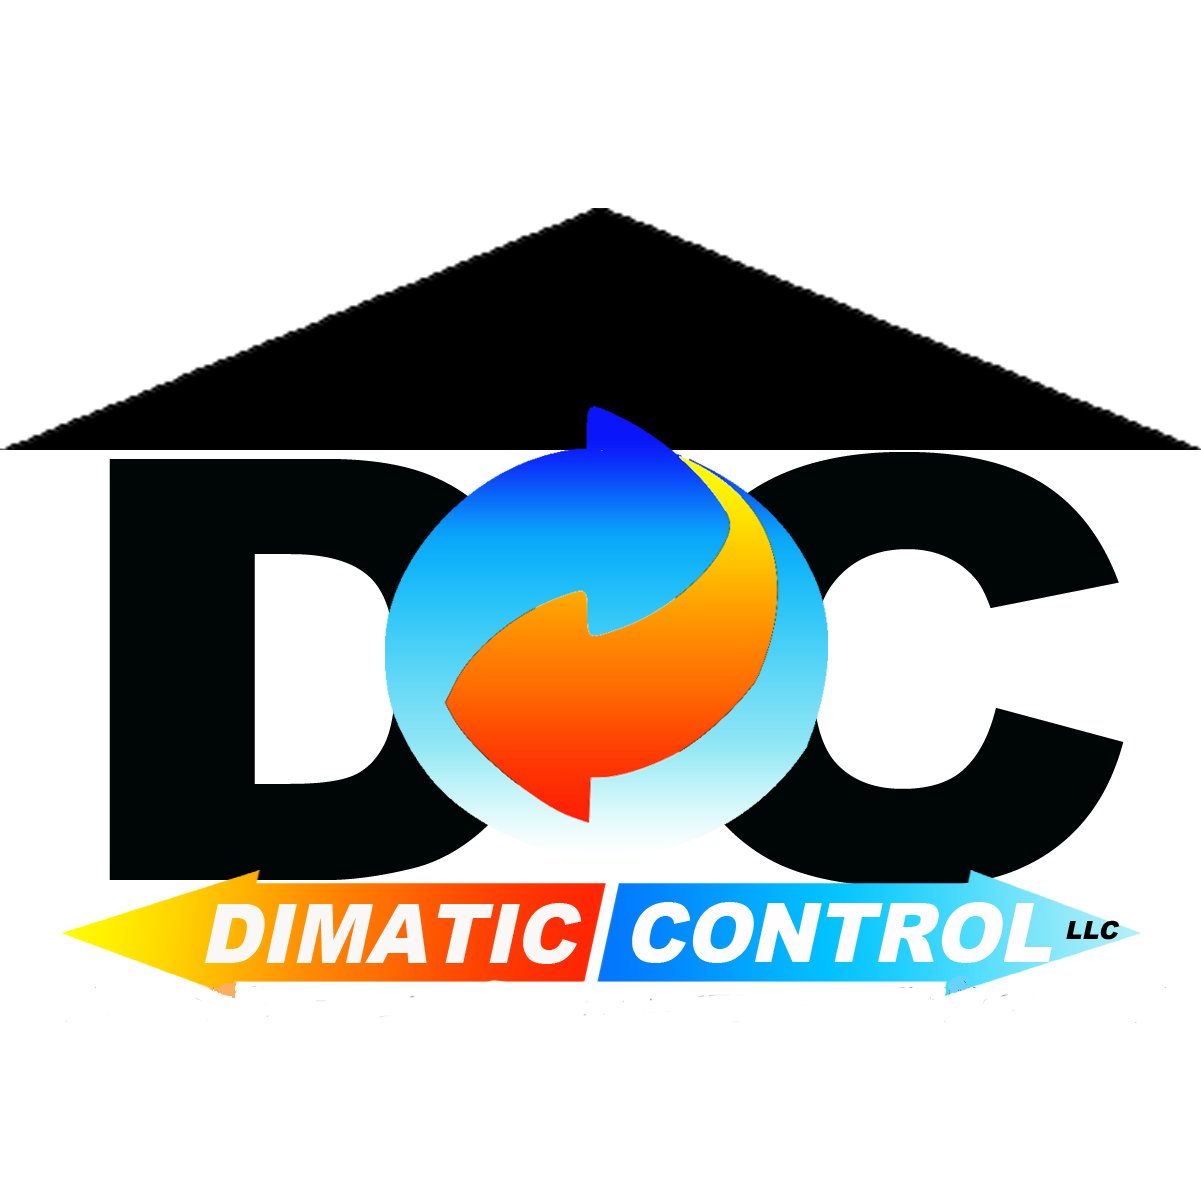 Dimatic Control LLC